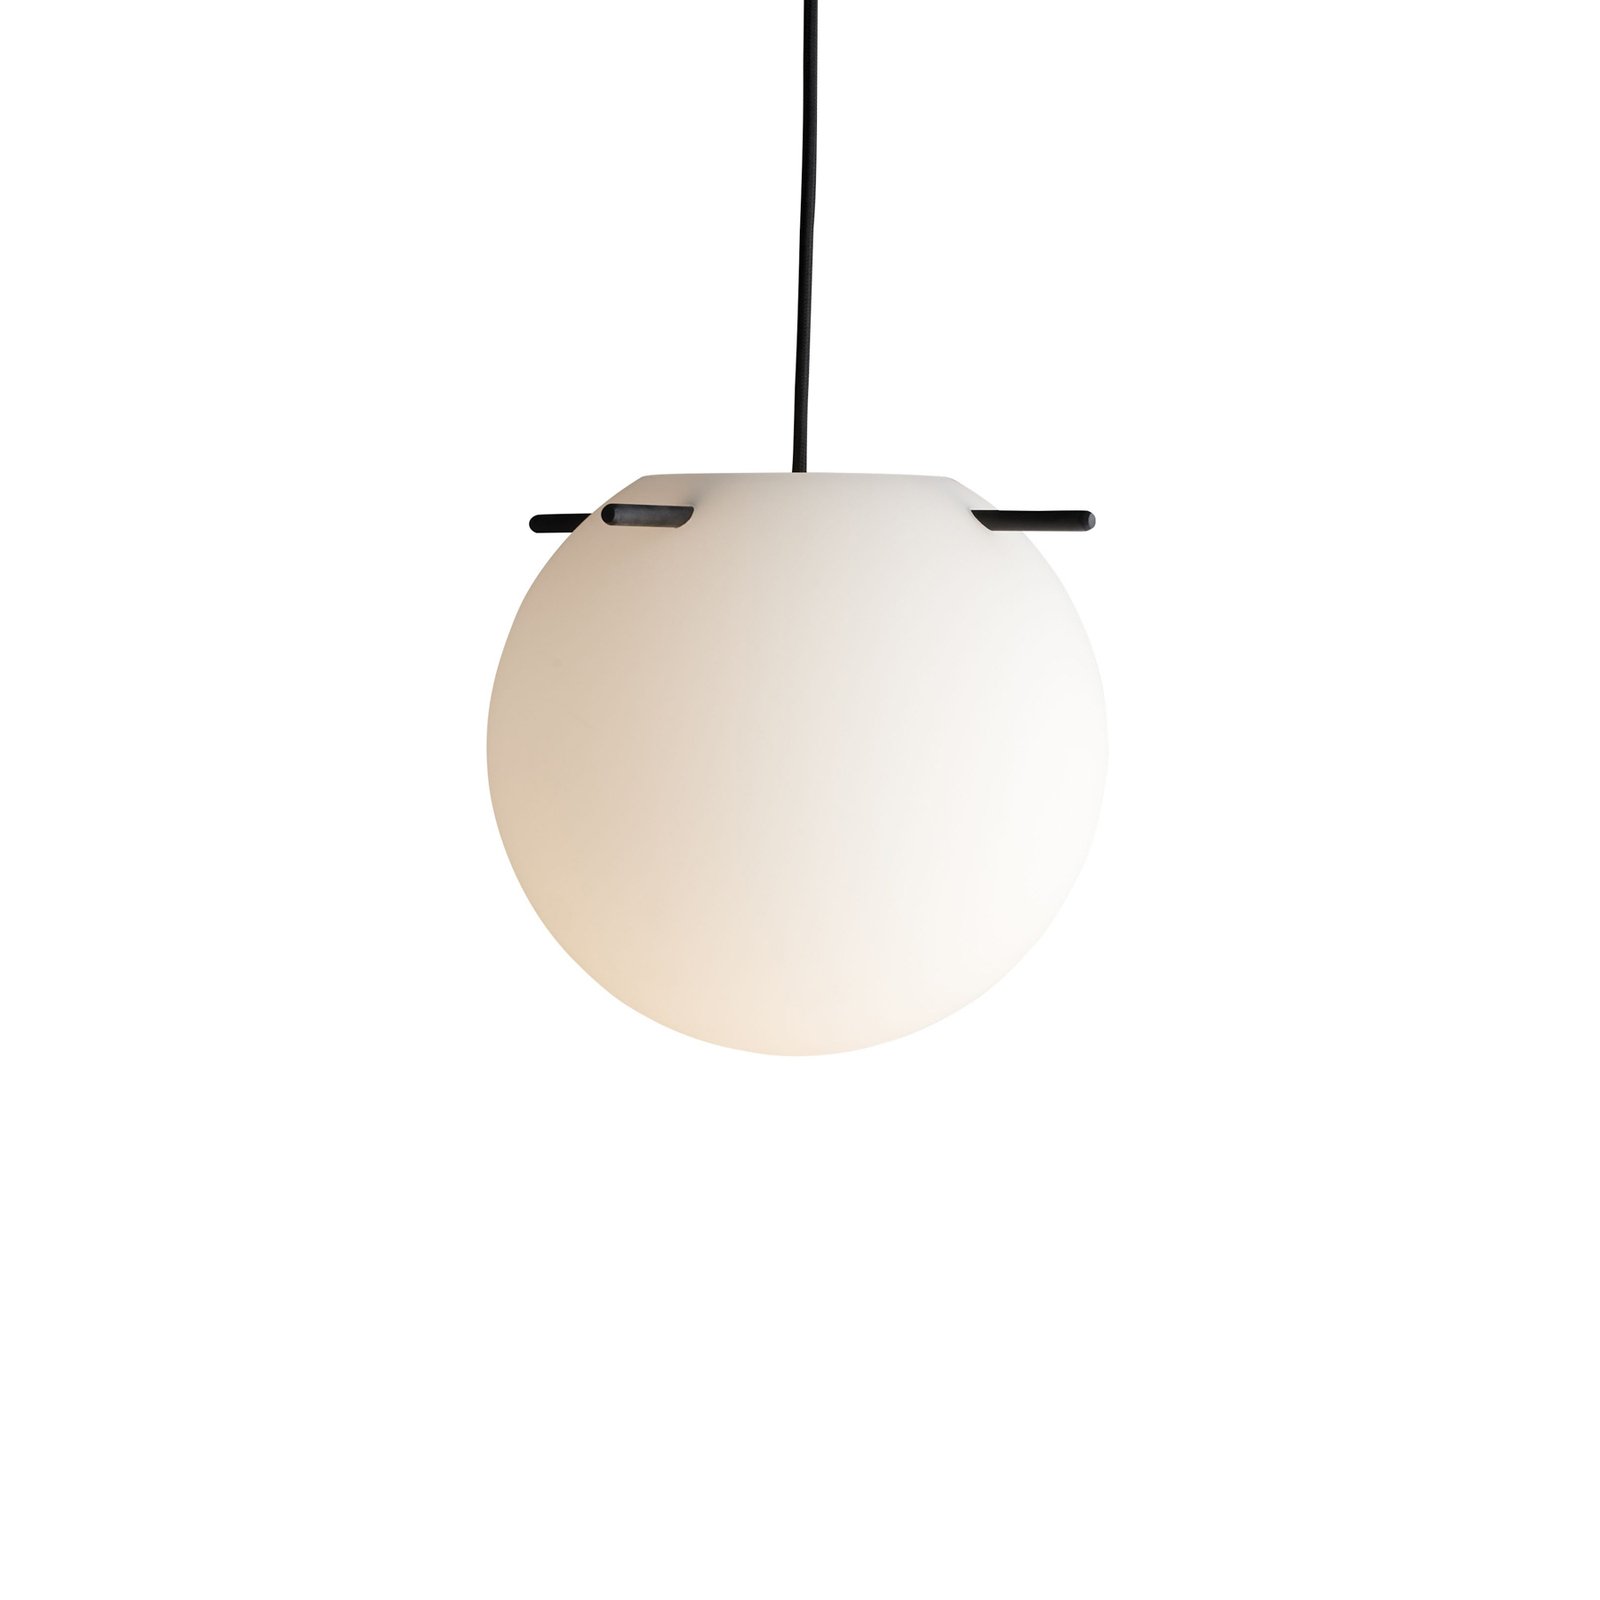 FRANDSEN hanglamp Koi, glas, wit/zwart, Ø 25 cm